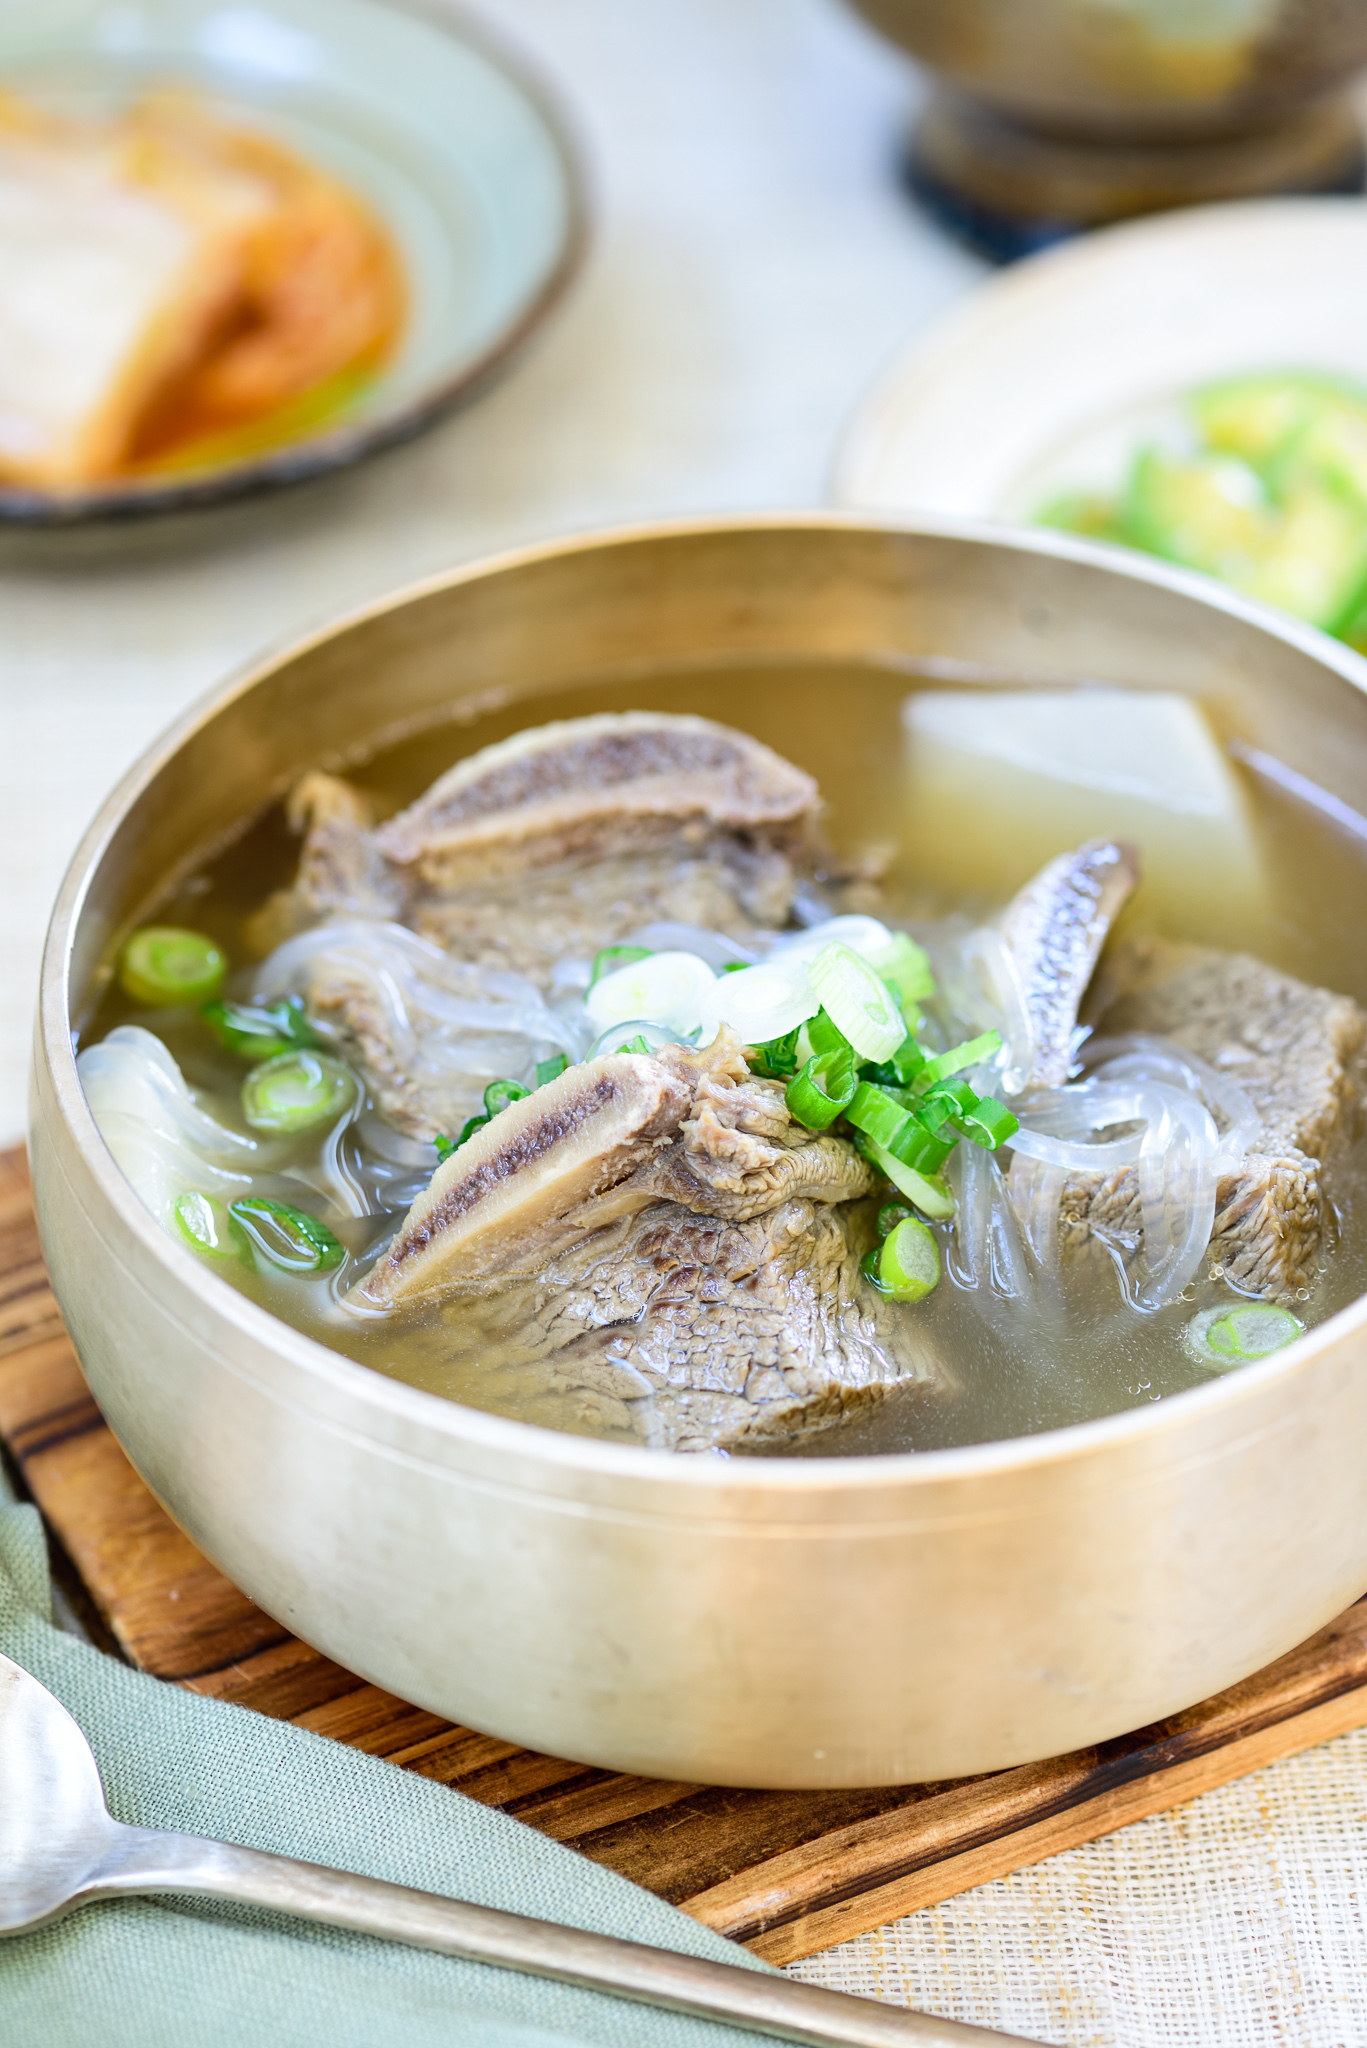 Cách nấu canh sườn bò Hàn Quốc nóng hổi vừa thổi vừa ăn cho ngày đông lạnh - Ảnh 1